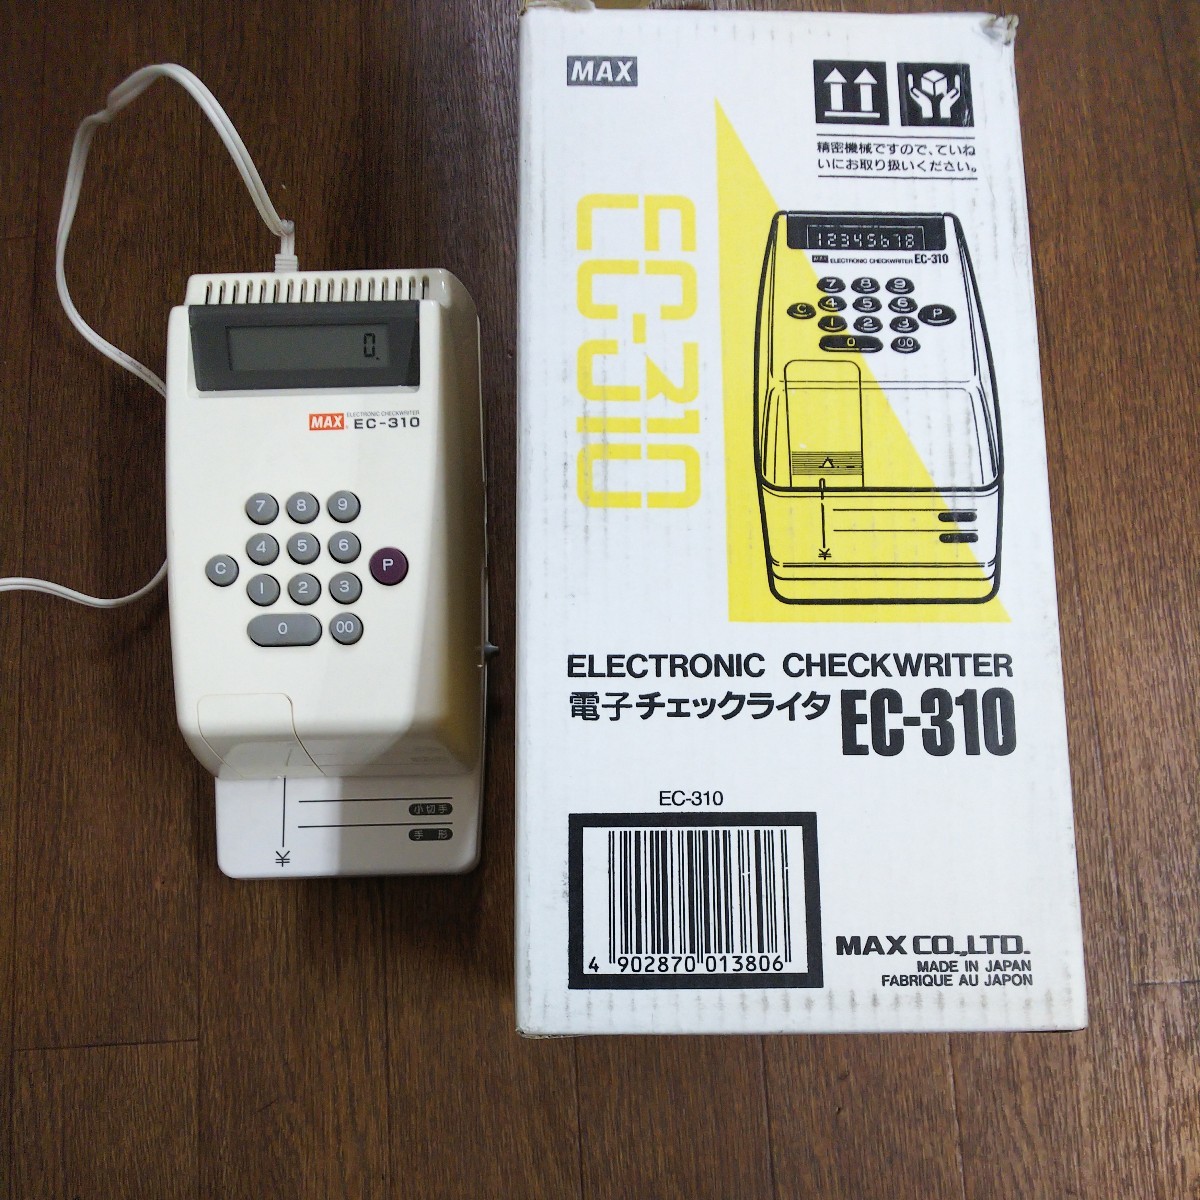 MAX電子チェックライターEC-310 - 店舗用品